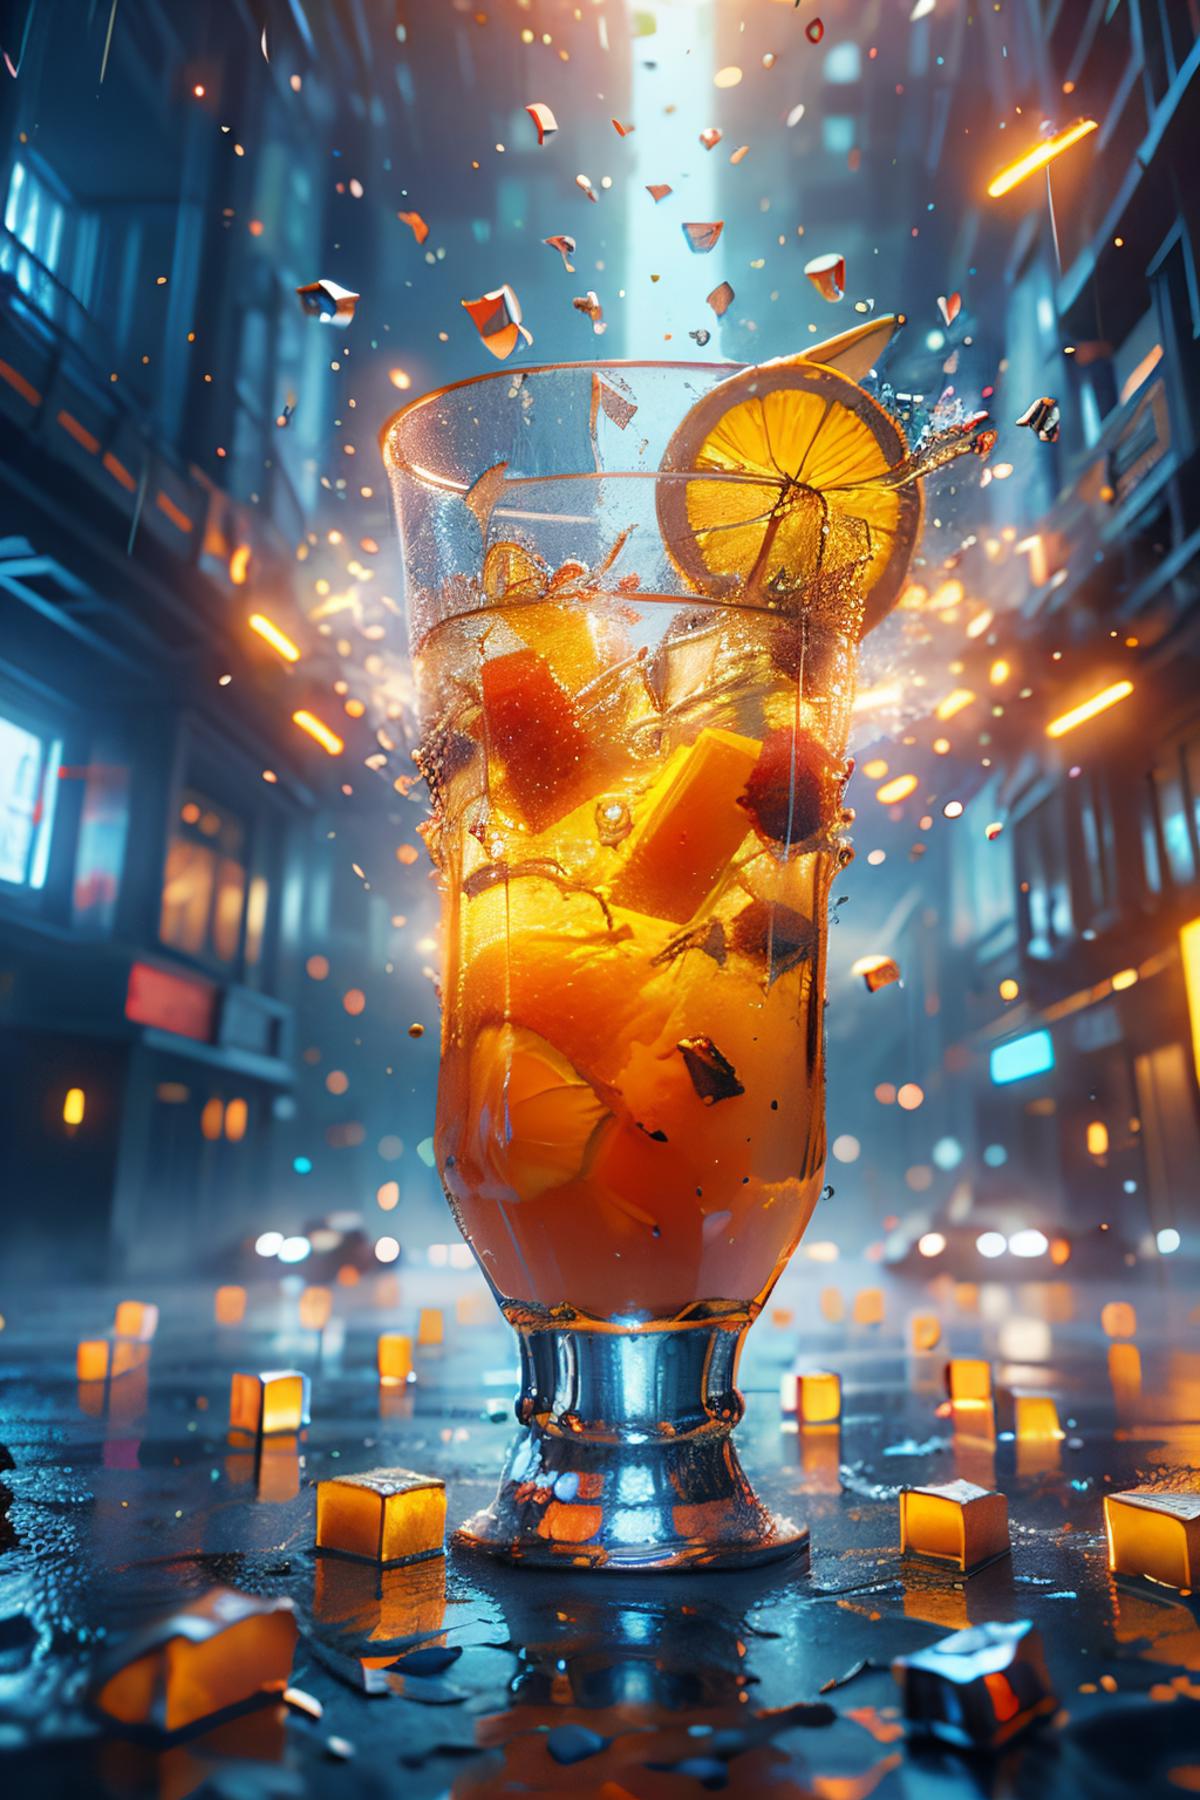 Cyber Juice image by norfleetzzc